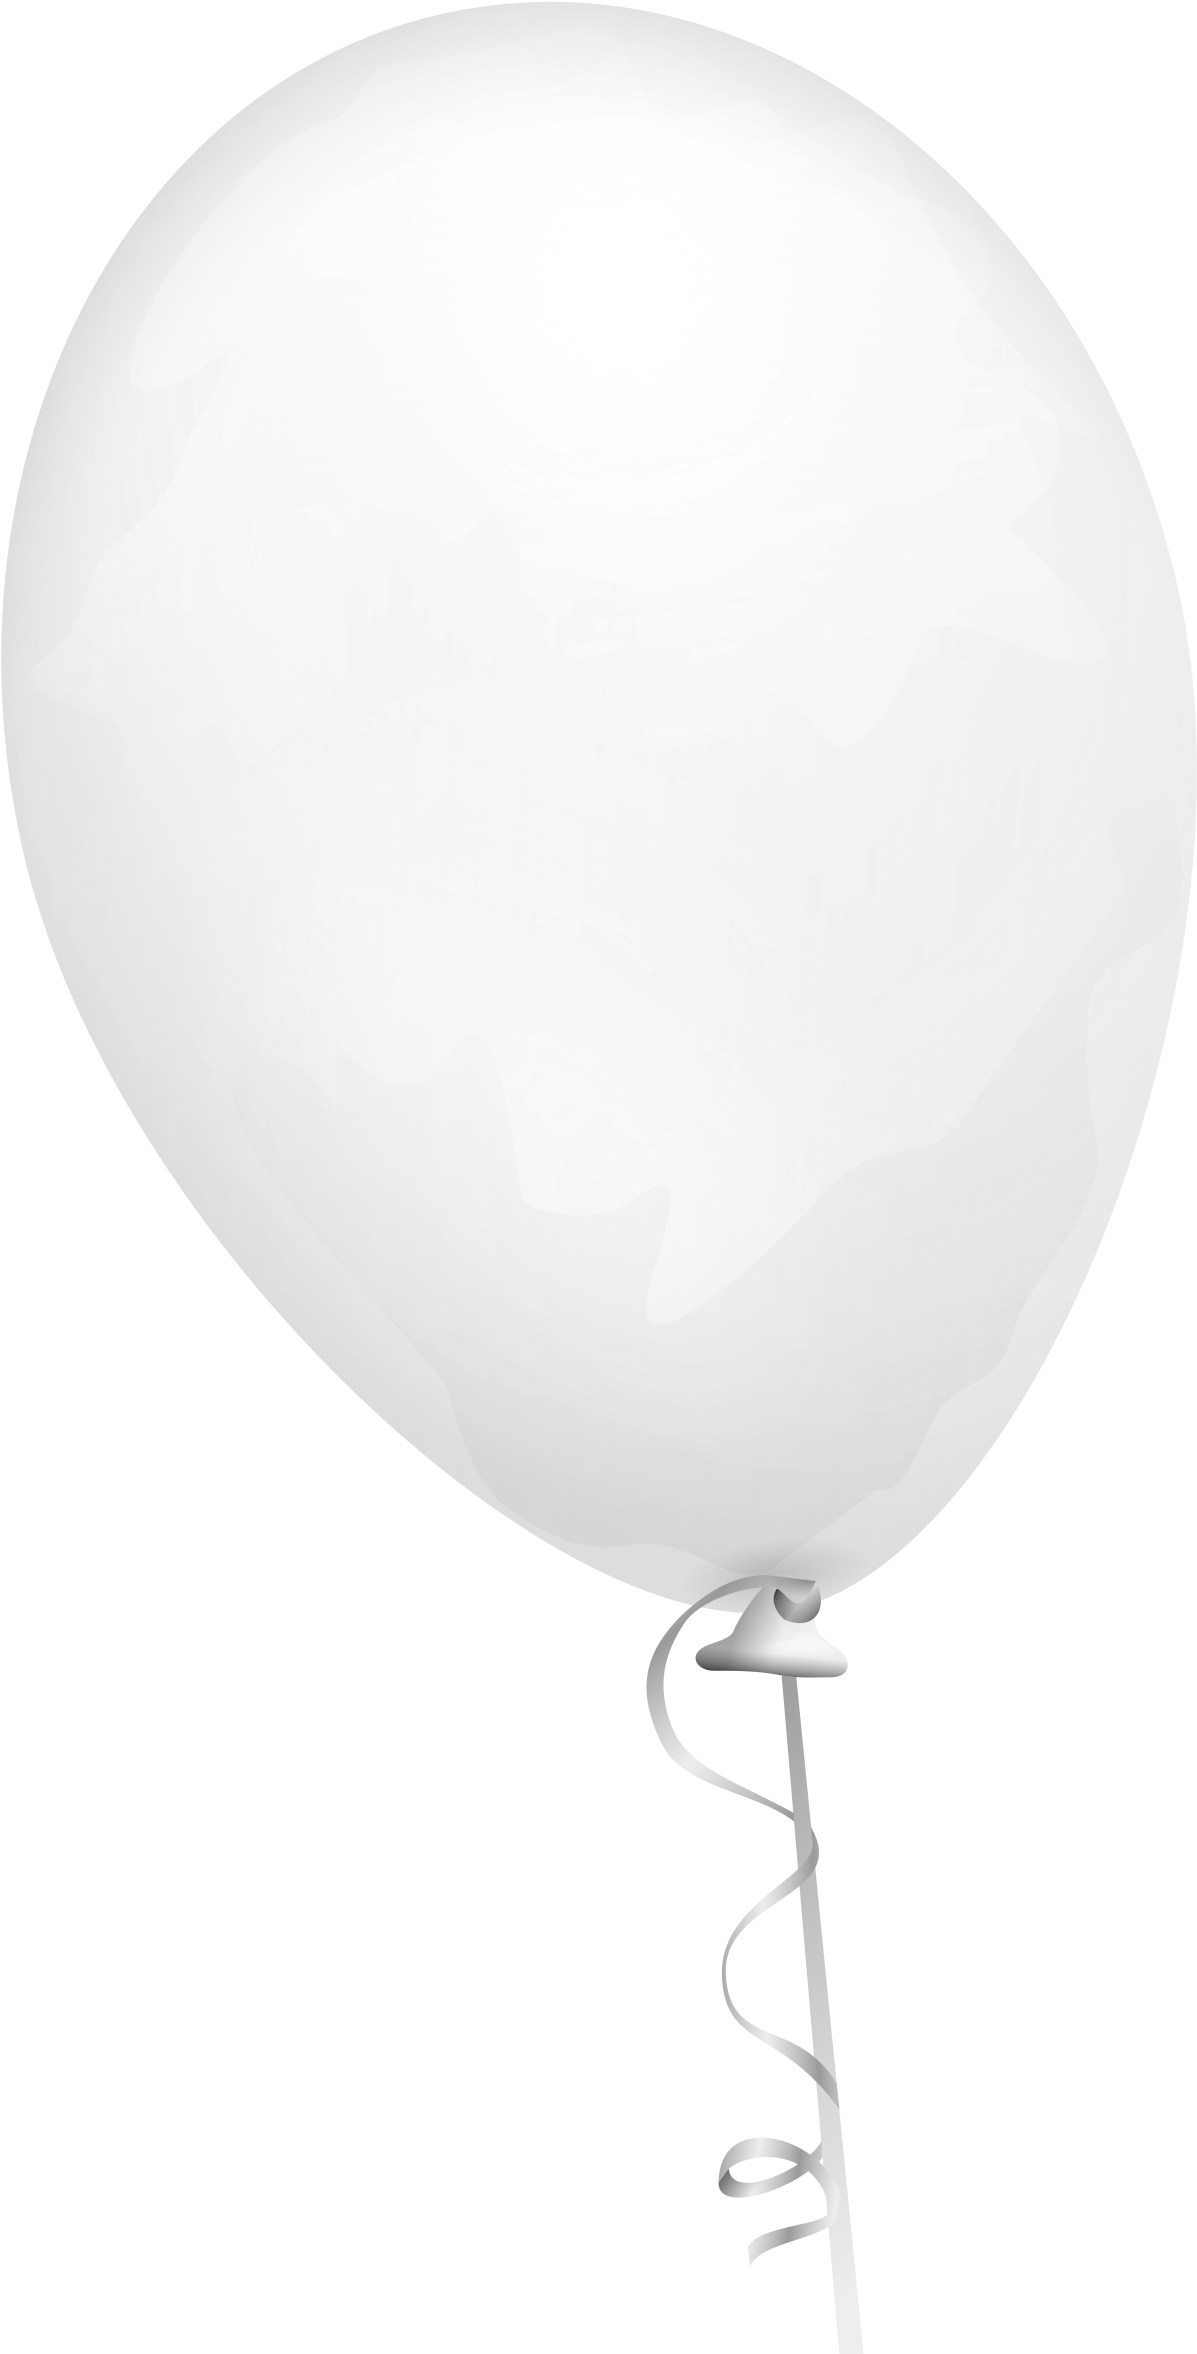 This Free Icons Png Design Of White Balloon - White Ballon Transparent ...